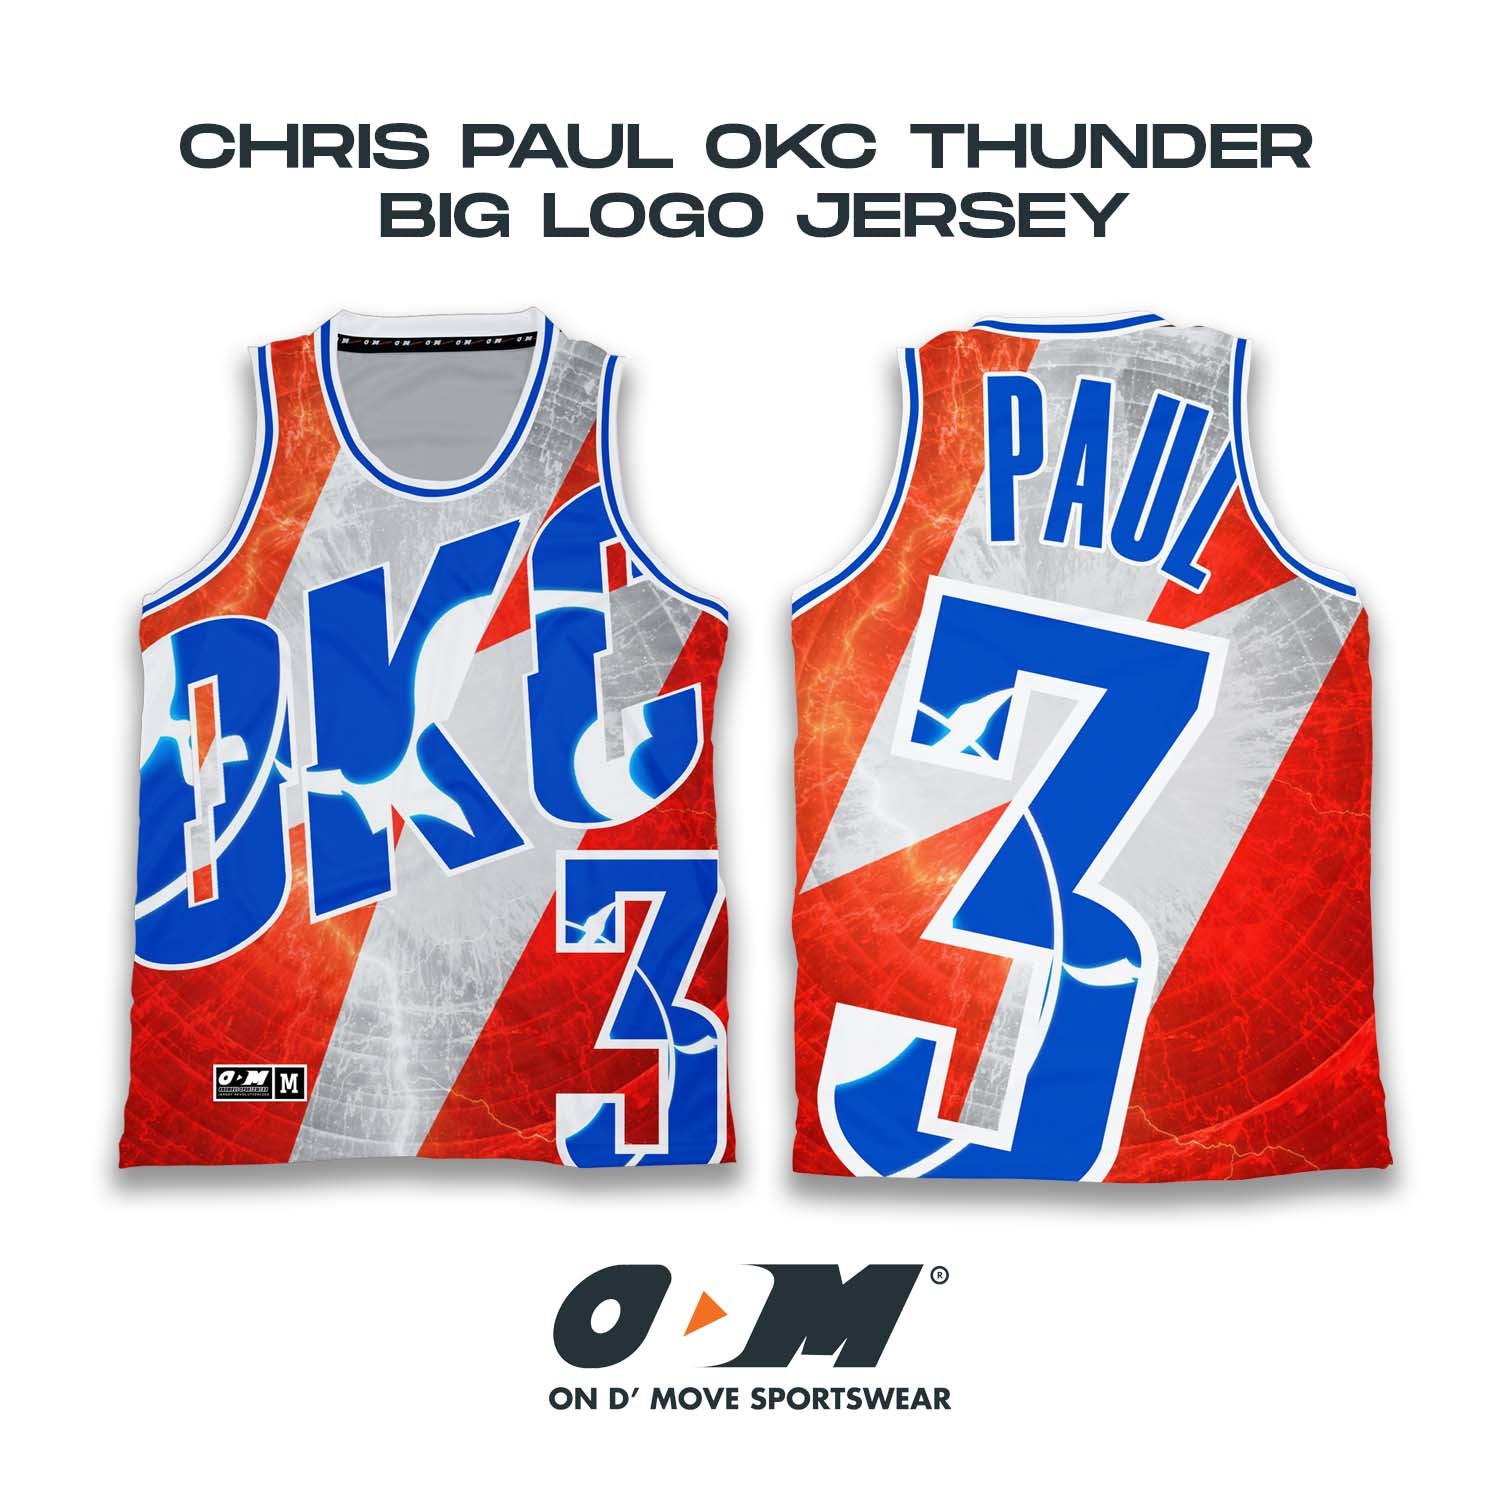 Chris Paul OKC Thunder Big Logo Jersey